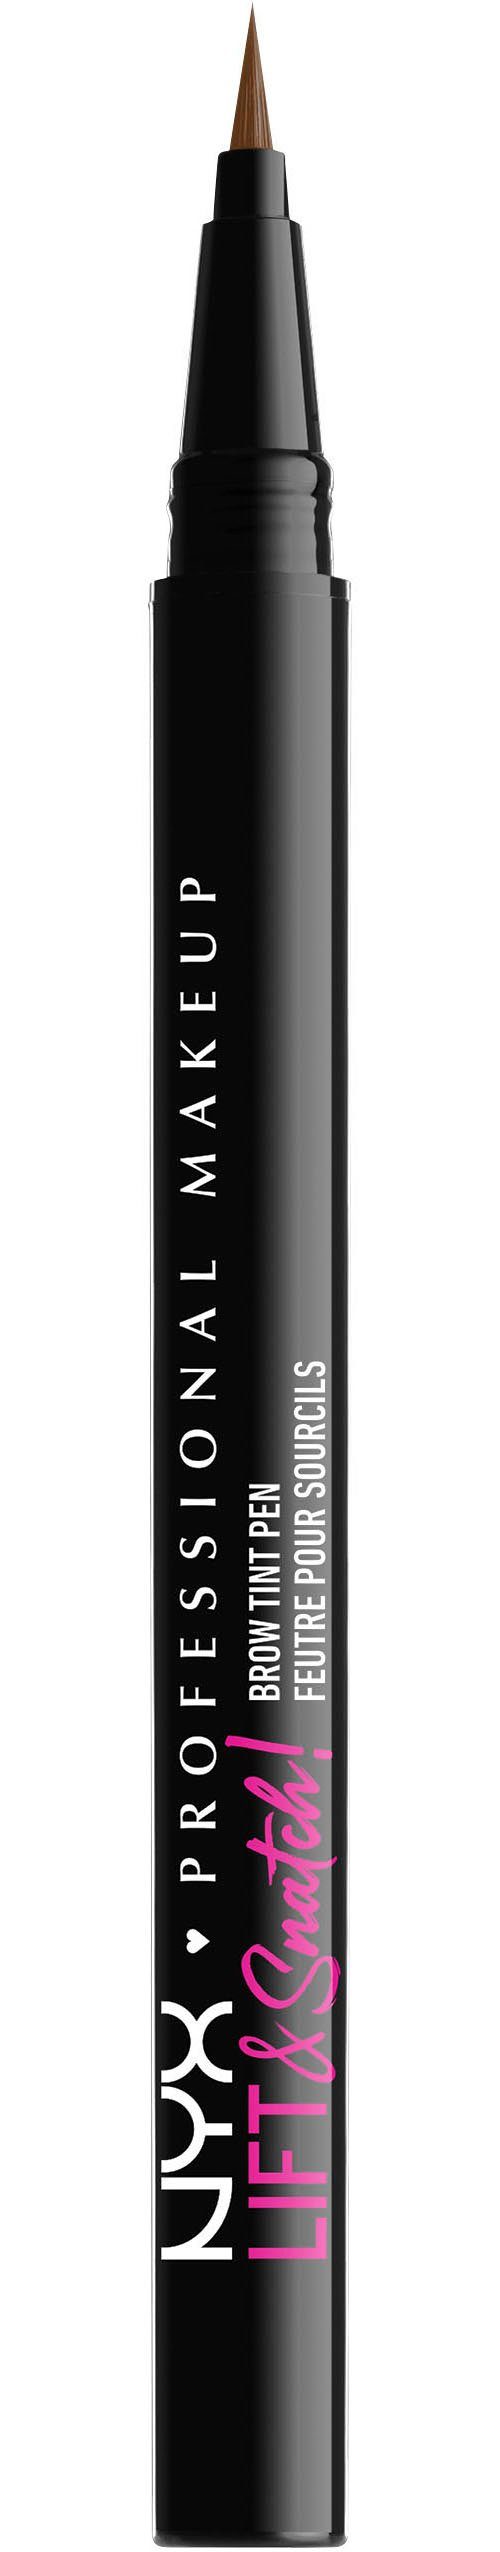 NYX Augenbrauen-Stift Professional Makeup Lift & Snatch Brow Tint Pen caramel